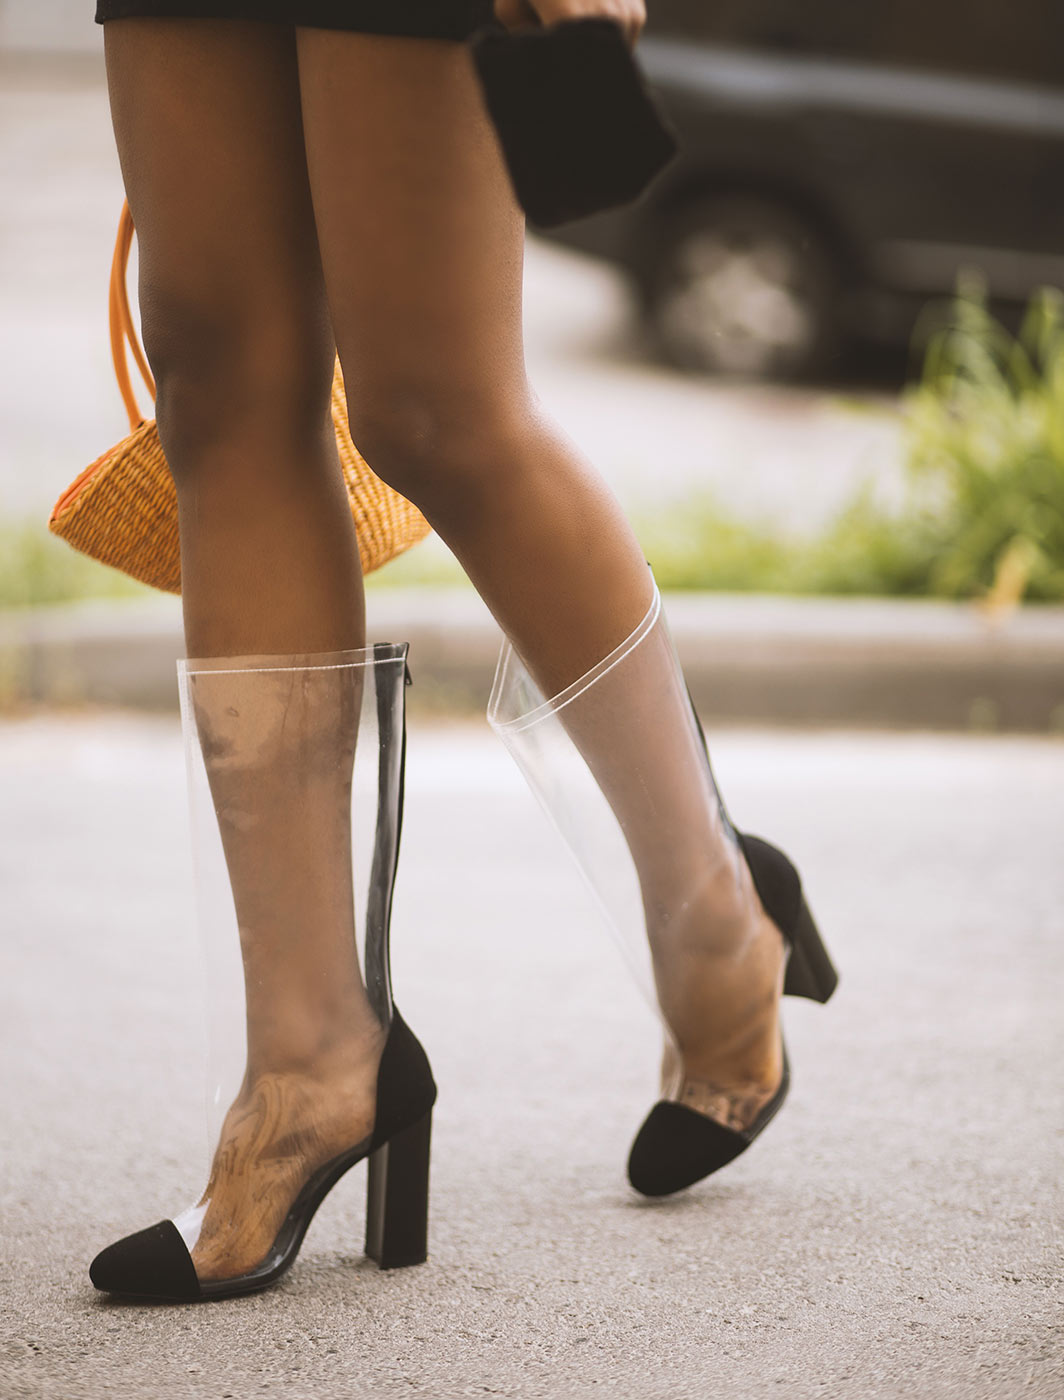 woman-wearing-clear-plastic-heels-1172283